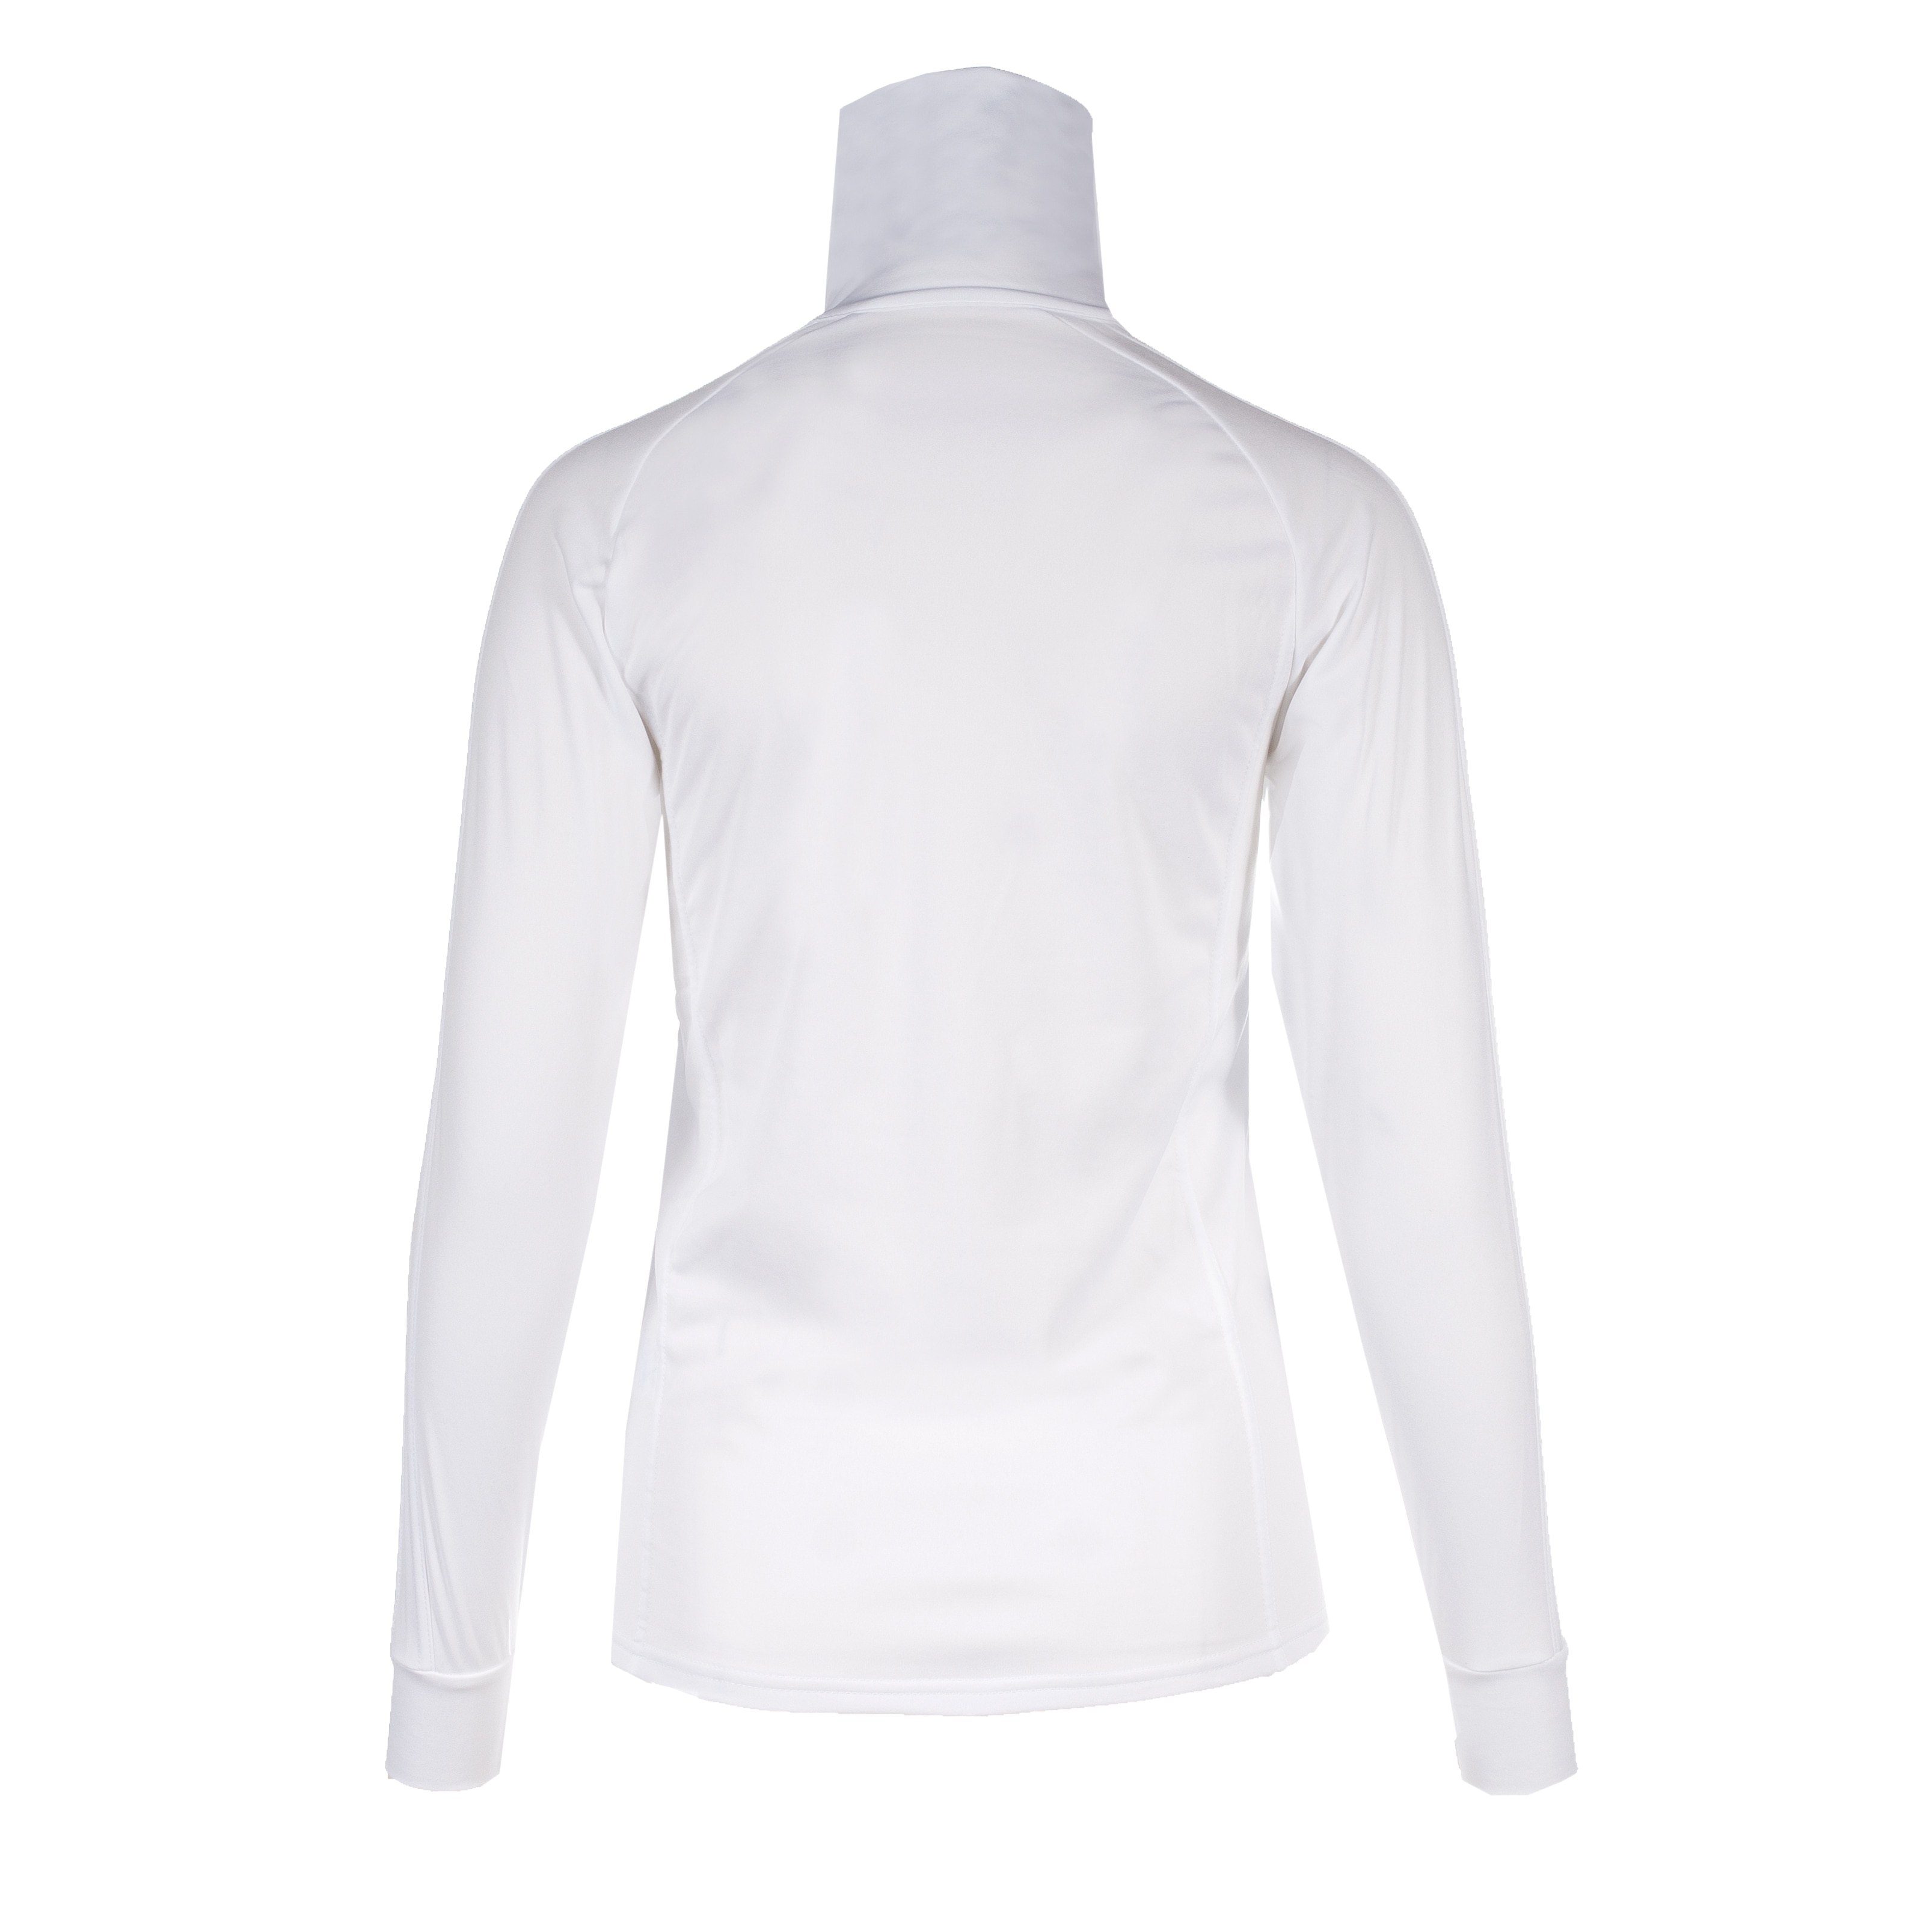 TKO Winter Renn-Shirt aus Microfleece und hohem Kragen